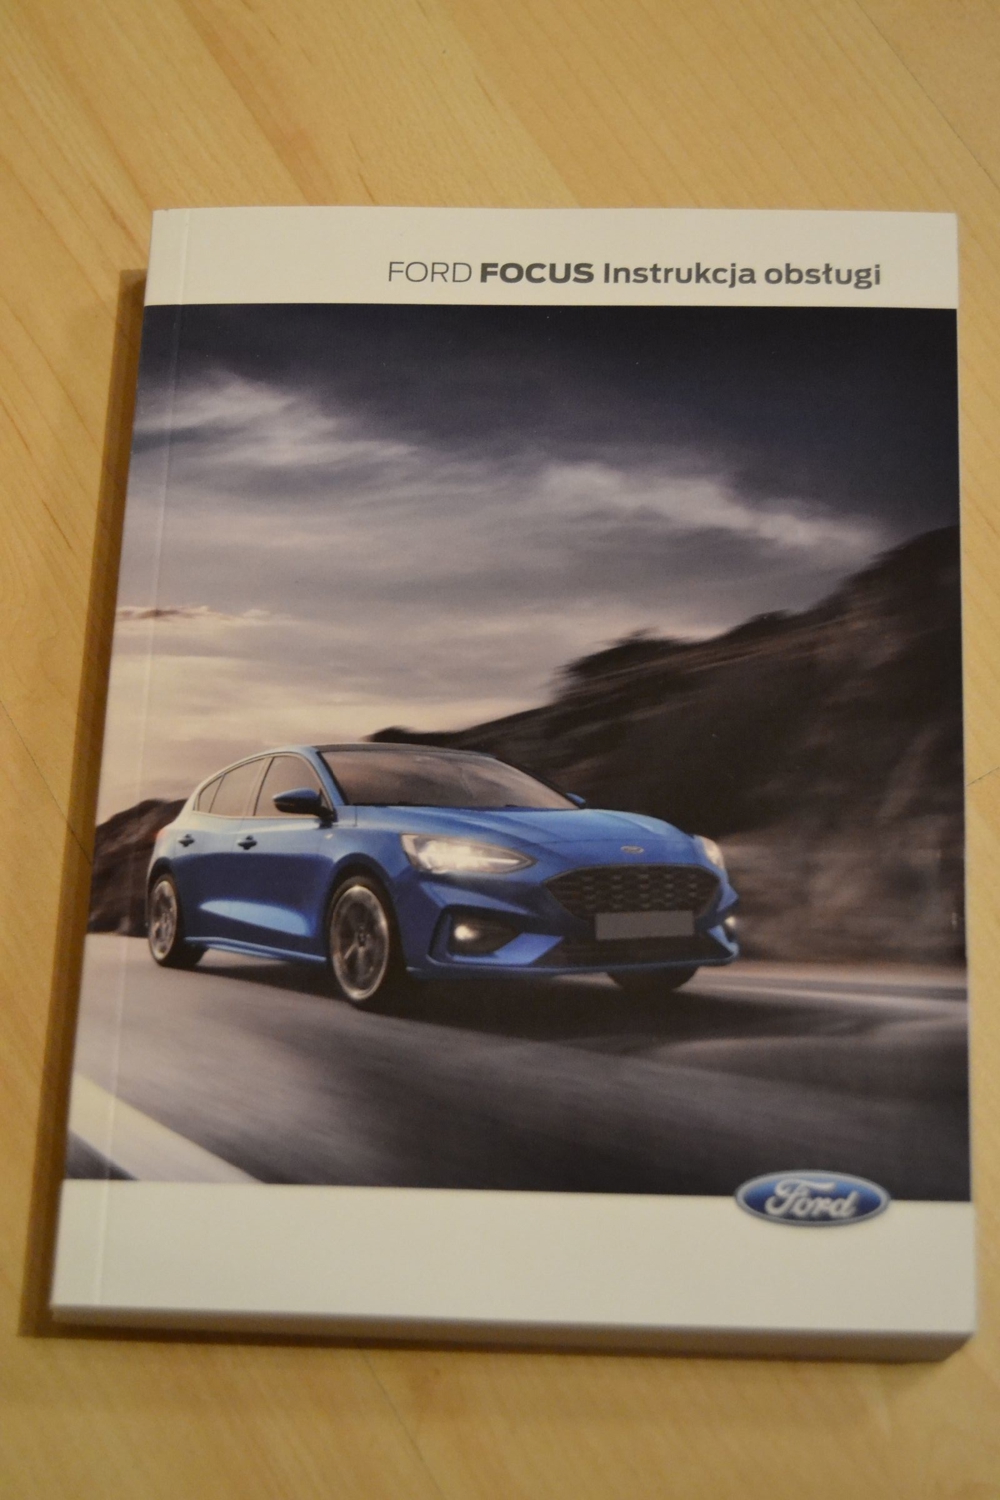 Sprzedam polsk instrukcj obsugi do Forda Focus, aktualny numer 2019-03